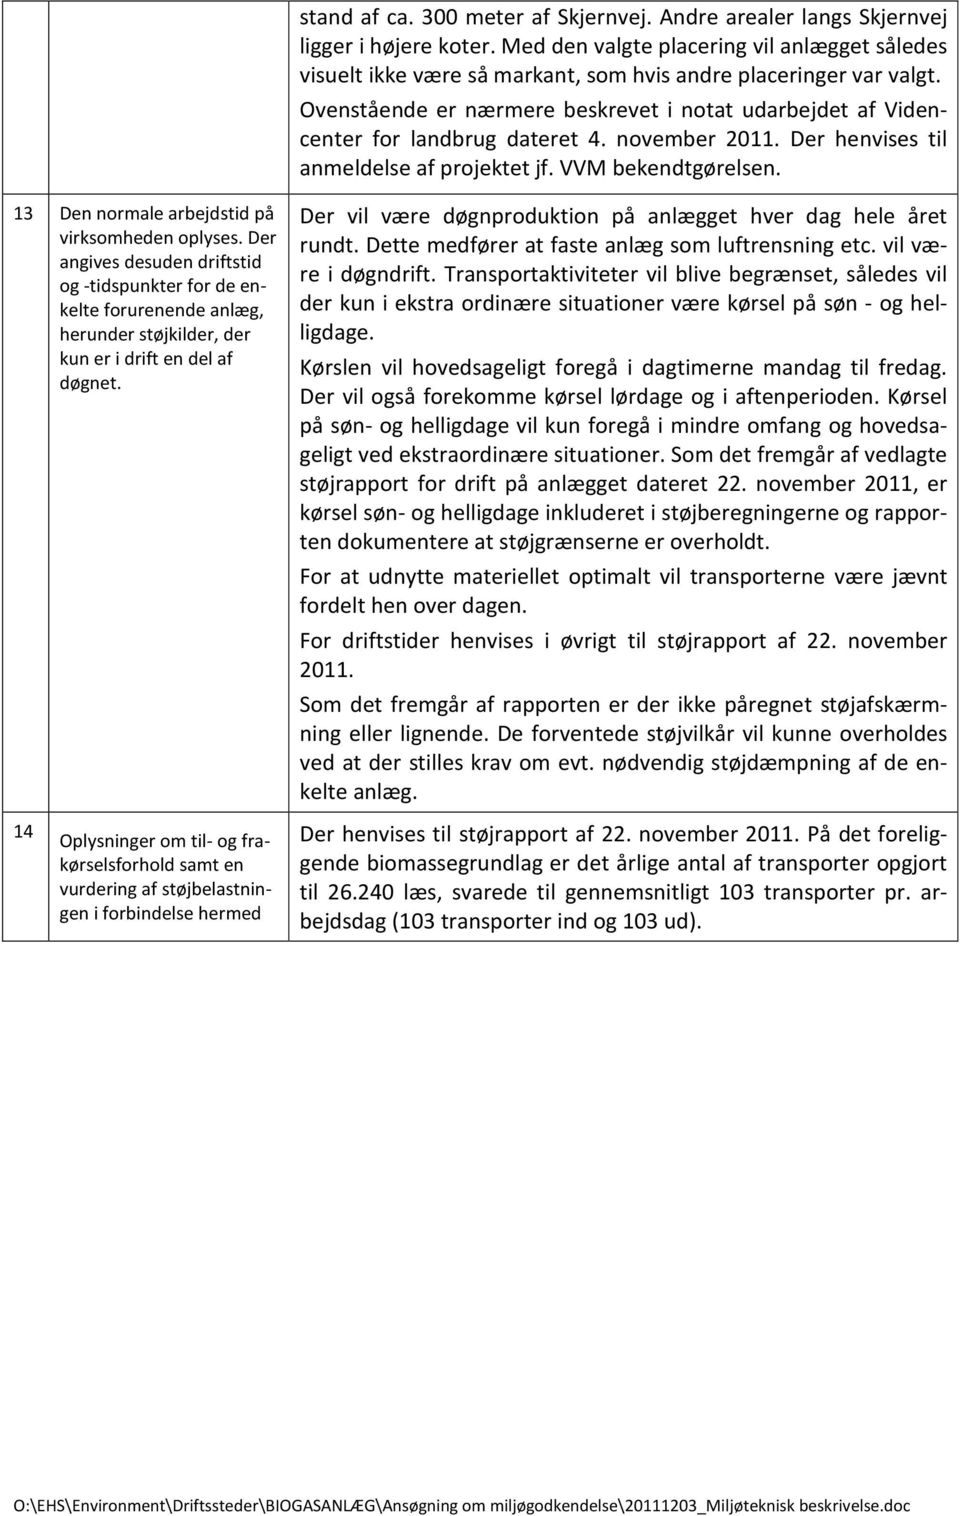 Ovenstående er nærmere beskrevet i notat udarbejdet af Videncenter for landbrug dateret 4. november 2011. Der henvises til anmeldelse af projektet jf. VVM bekendtgørelsen.